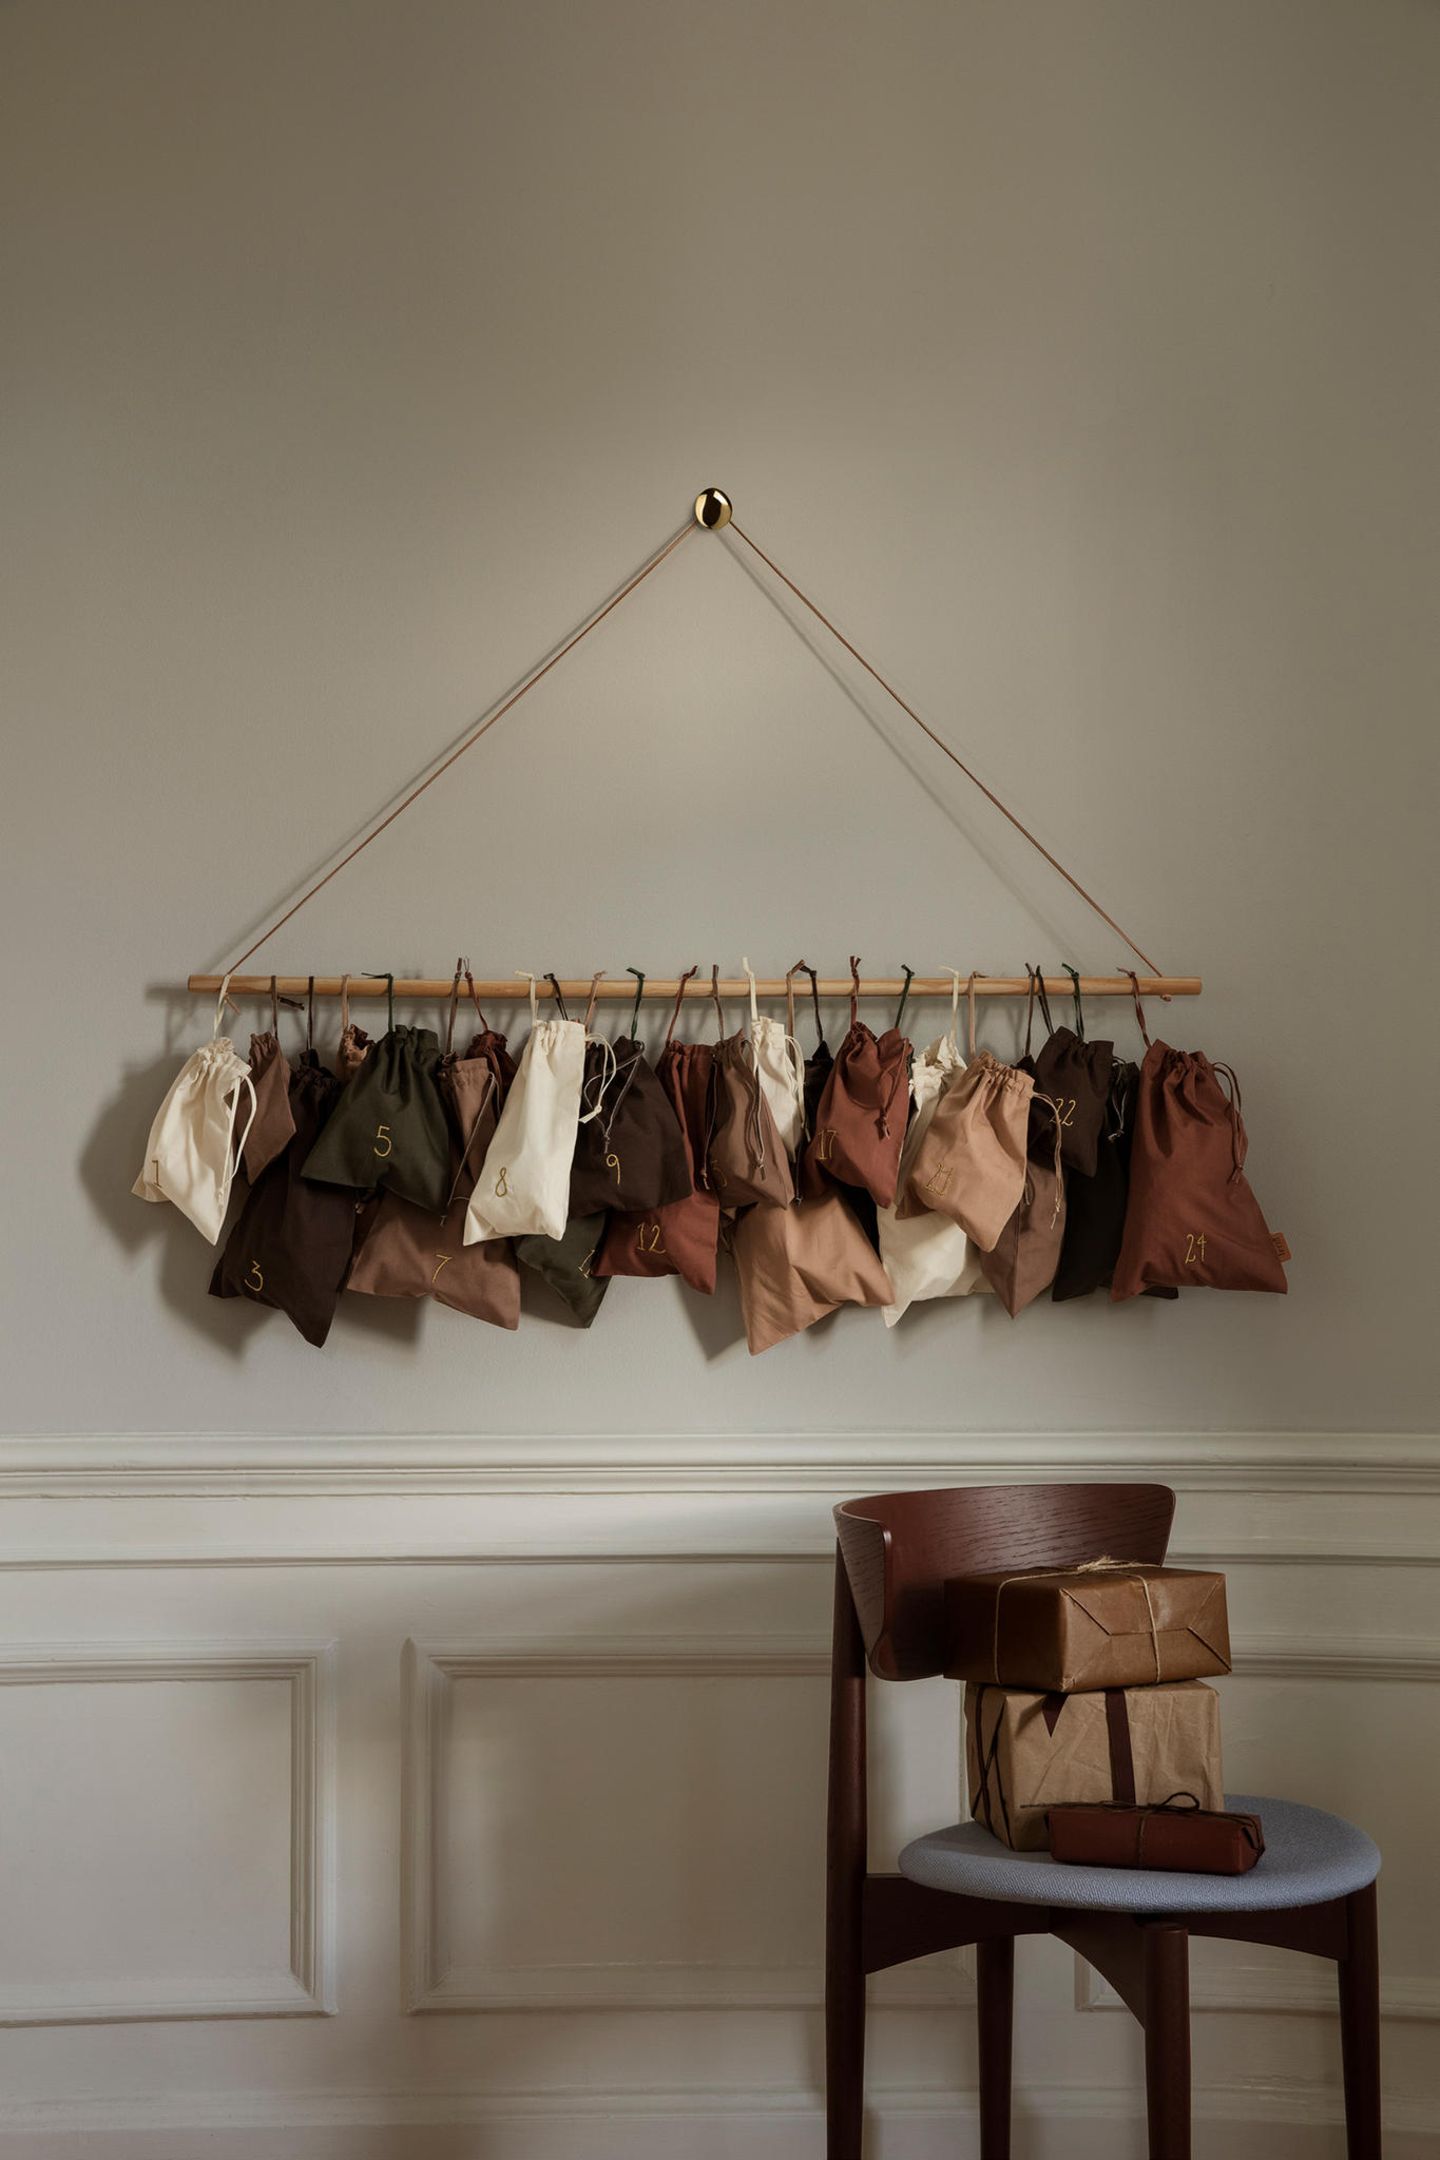 Adventskalender mit kleinen Säcken in verschiedenen Brauntönen hängen an einem Stock an einer Wand; darunter ein dunkler Stuhl